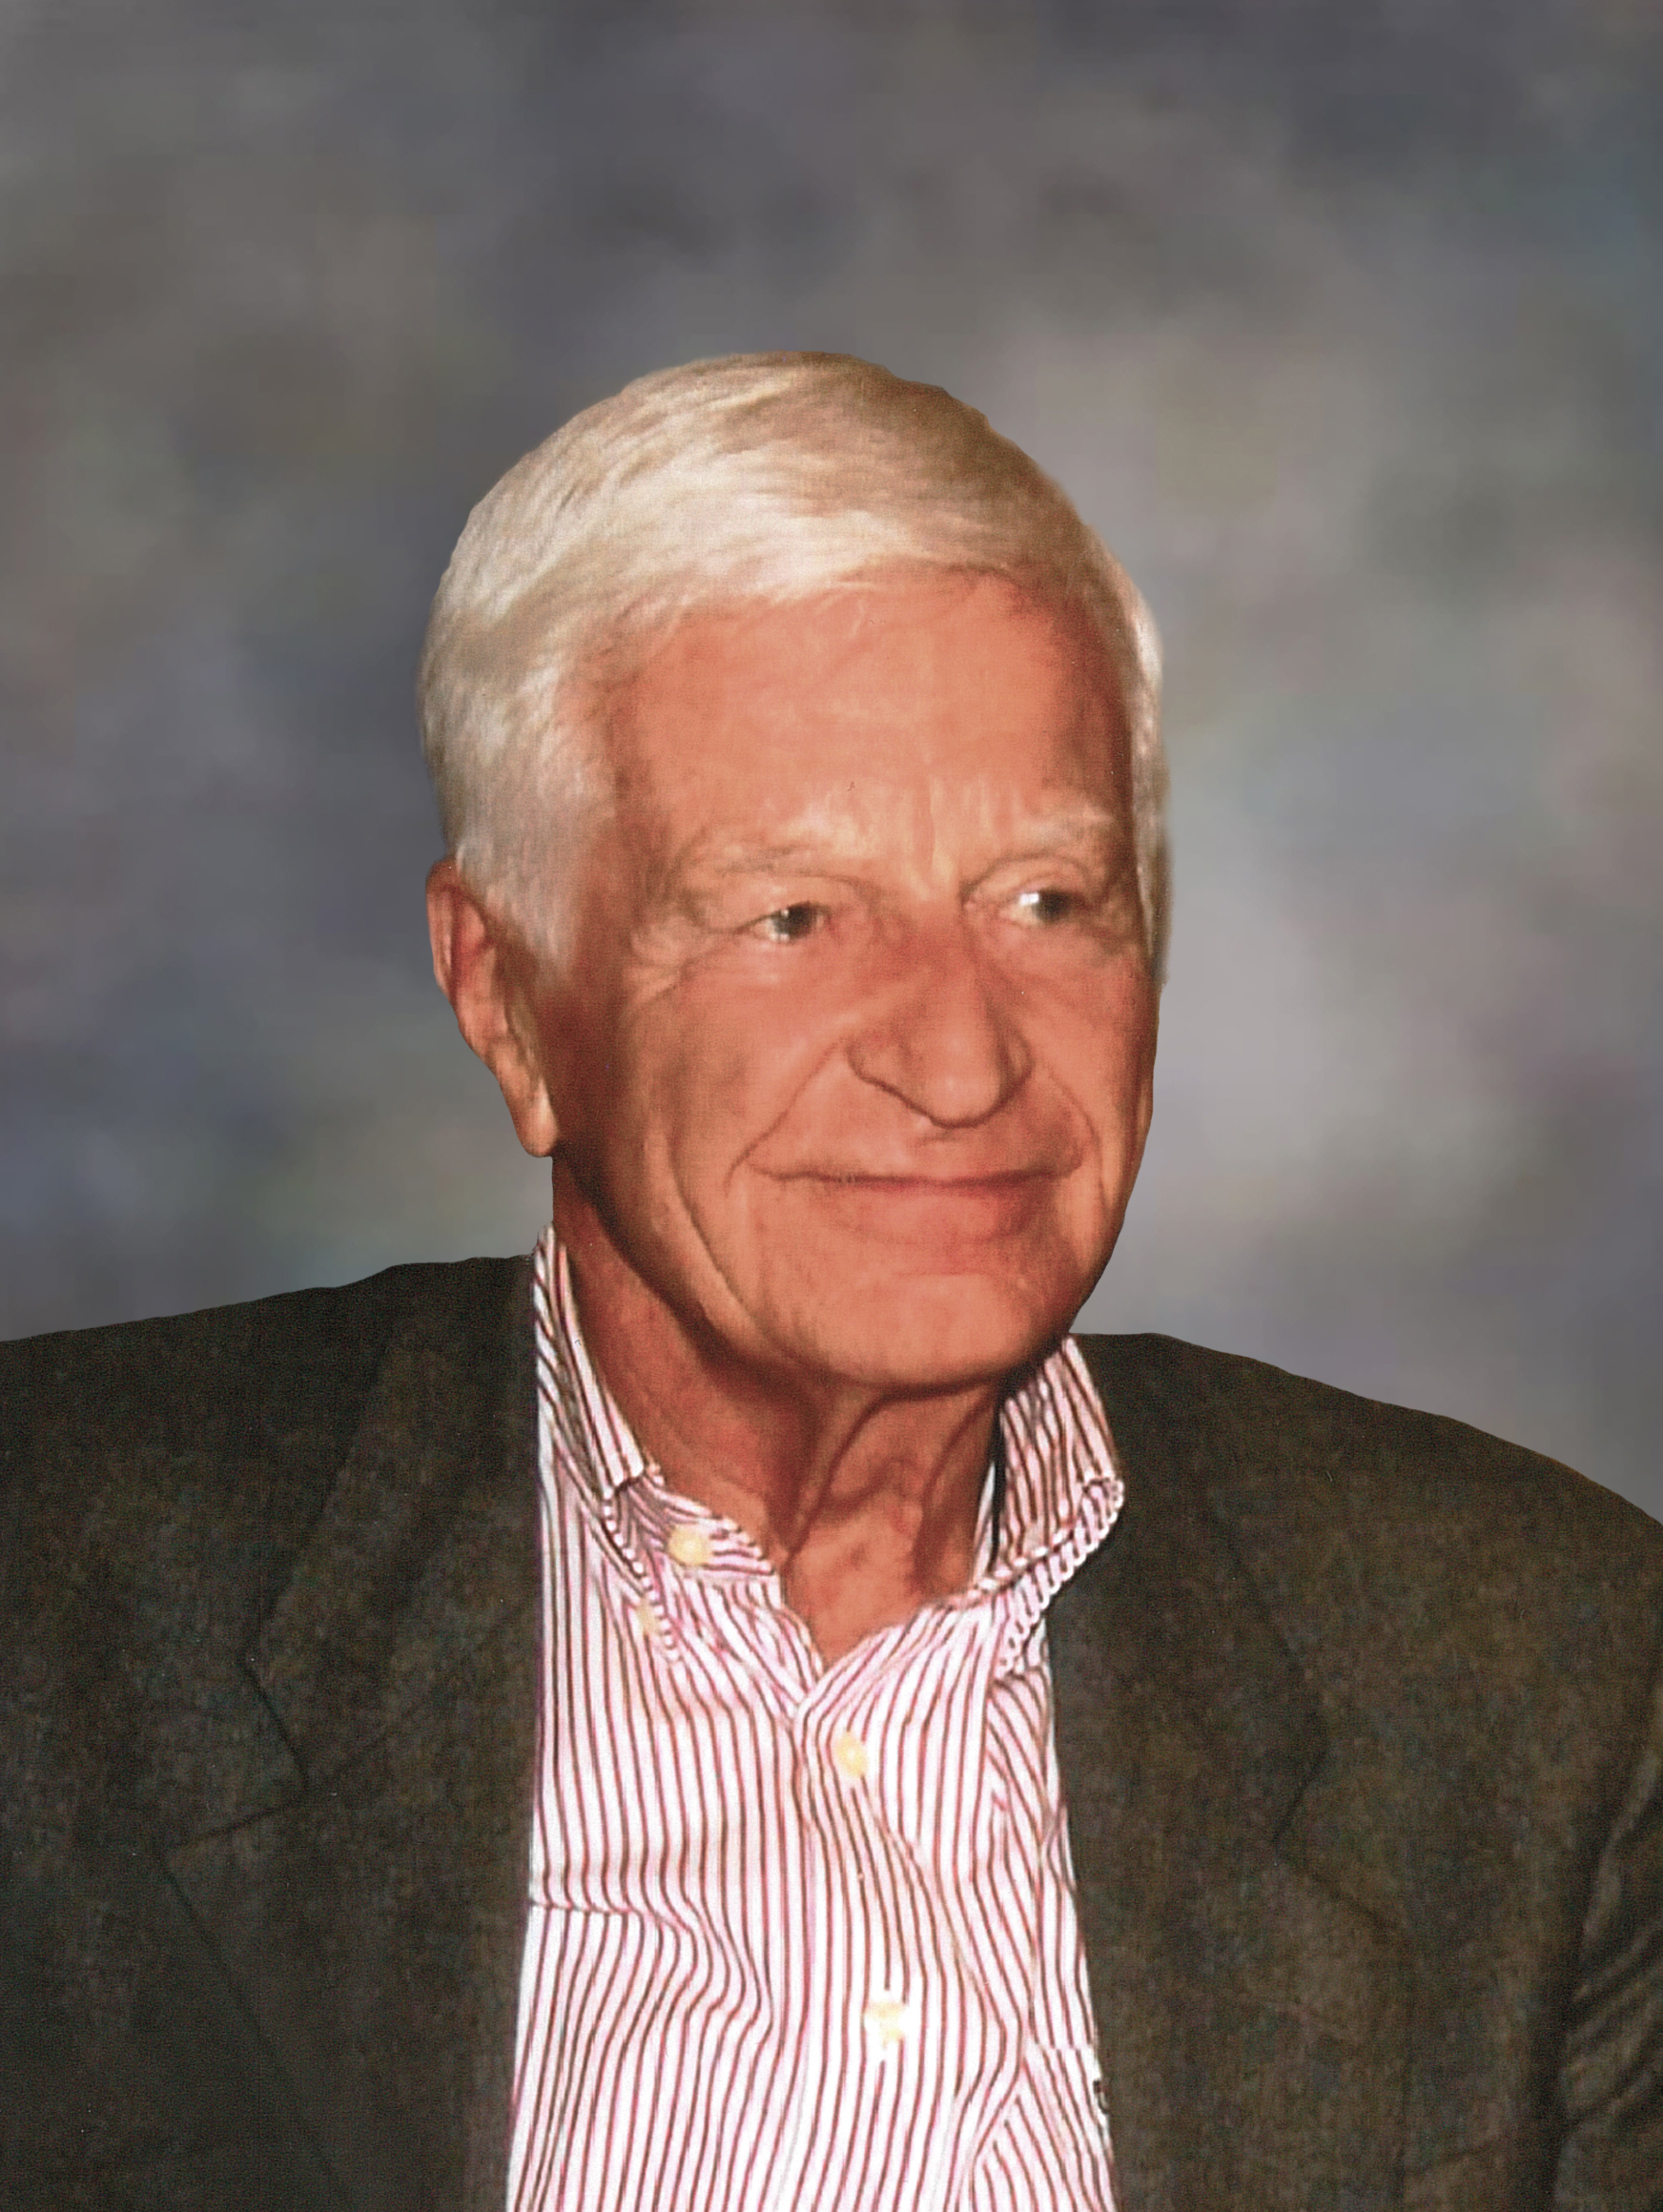 Kraiburg entrepreneur Peter Schmidt dies at 85